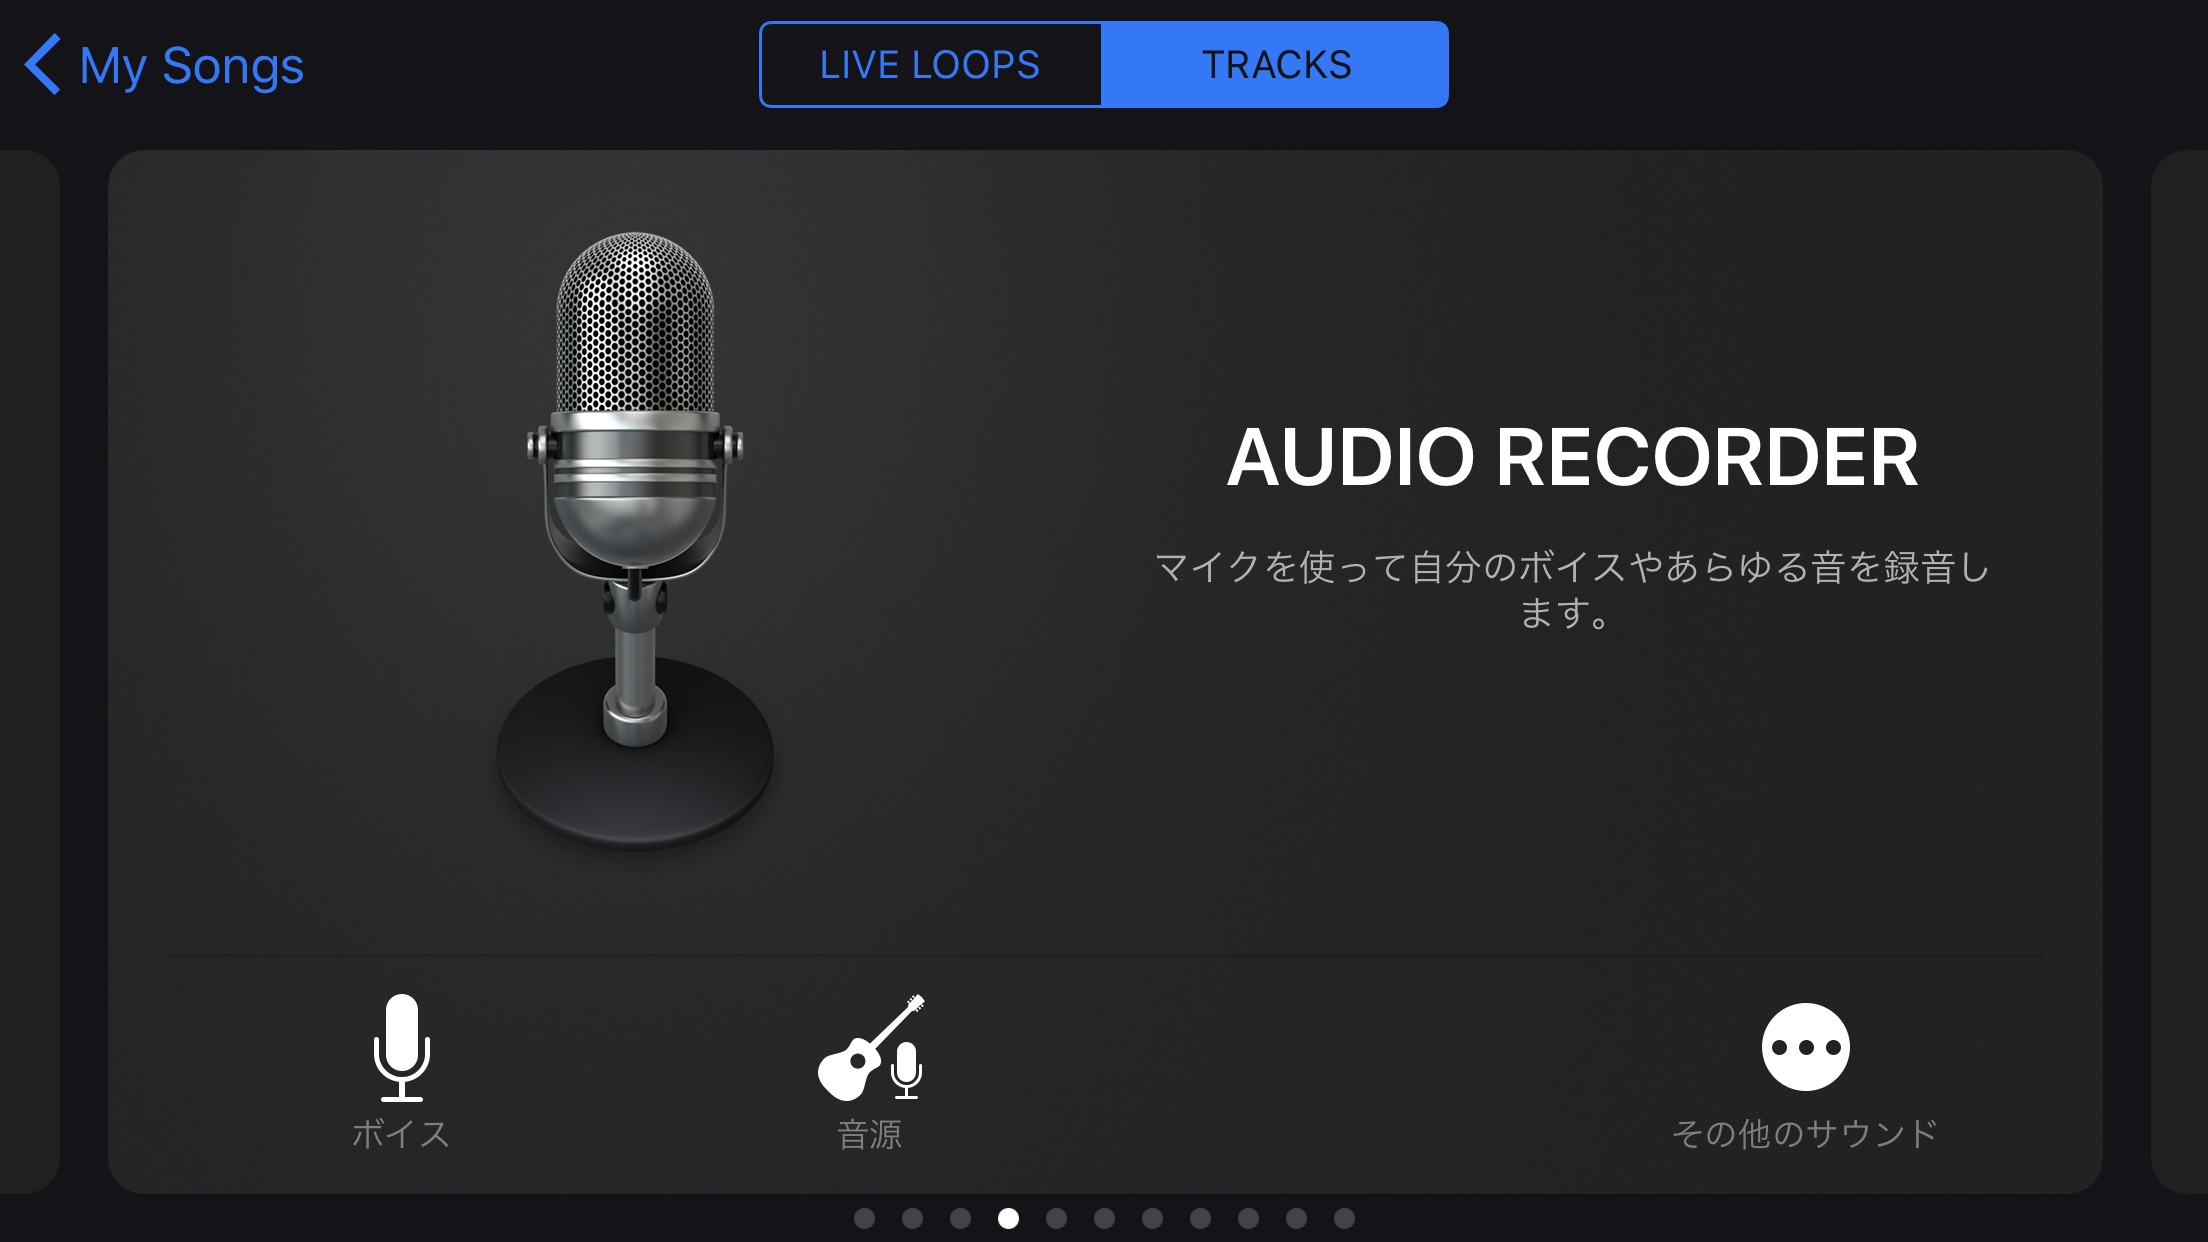 AUDIO RECORDER